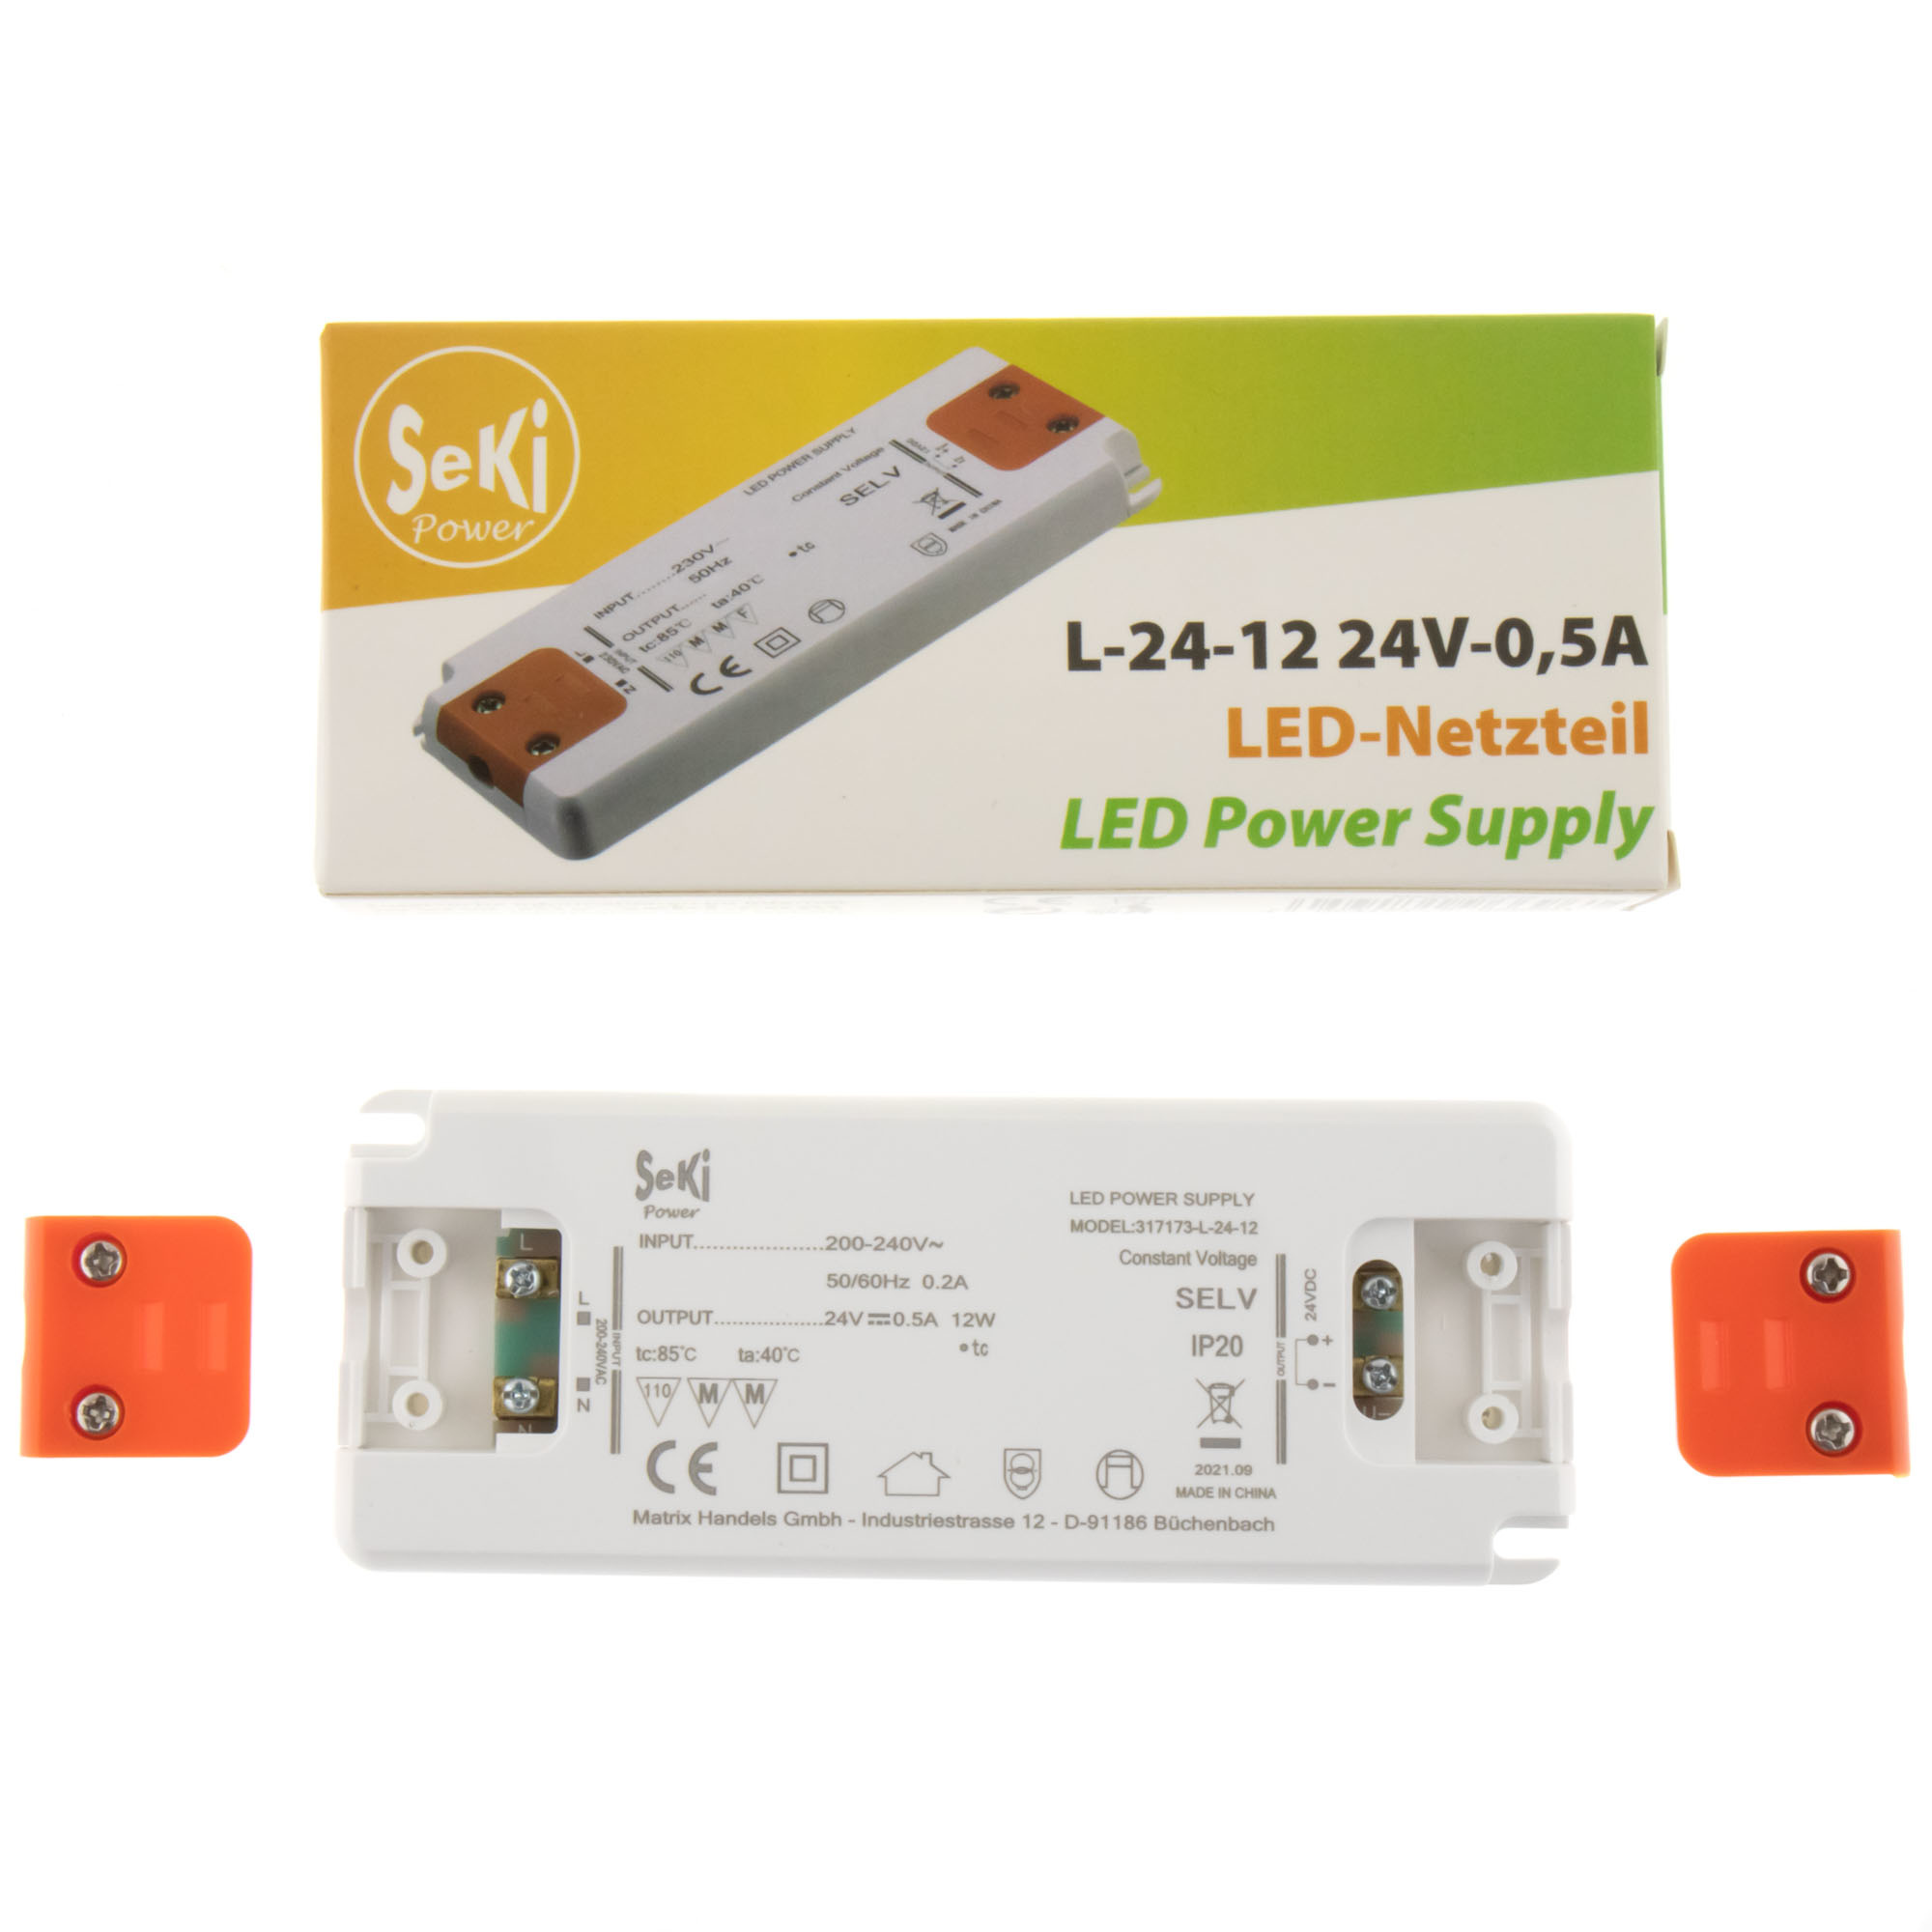 LED power supply L-24-12 - 24V - 0.5A - 12W